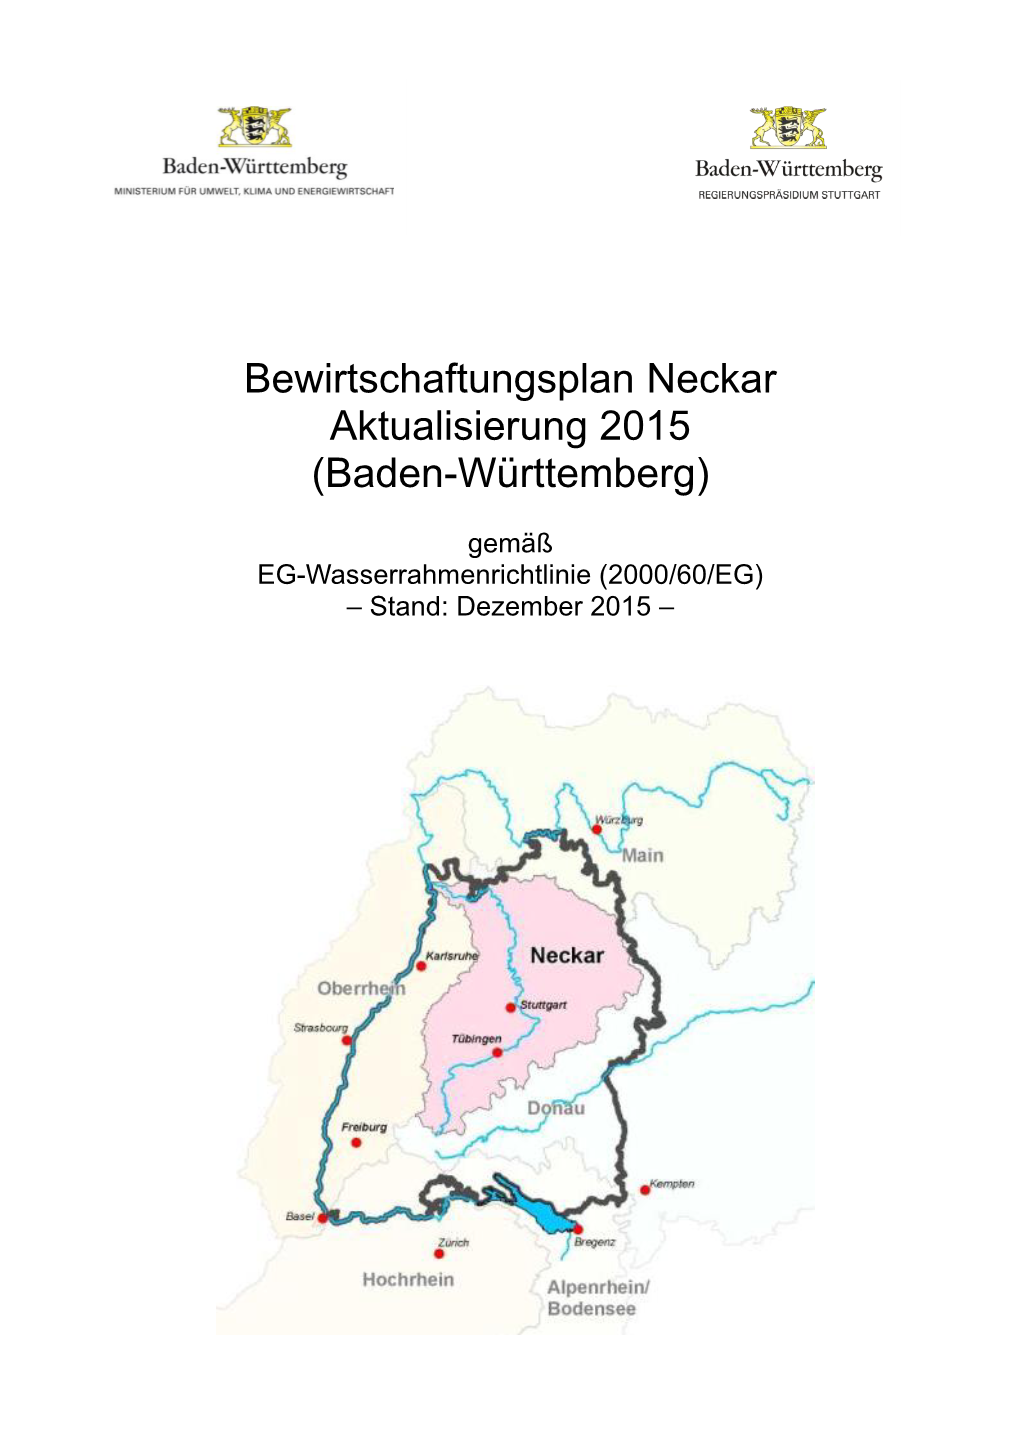 Bewirtschaftungsplan Neckar, Aktualisierung 2015